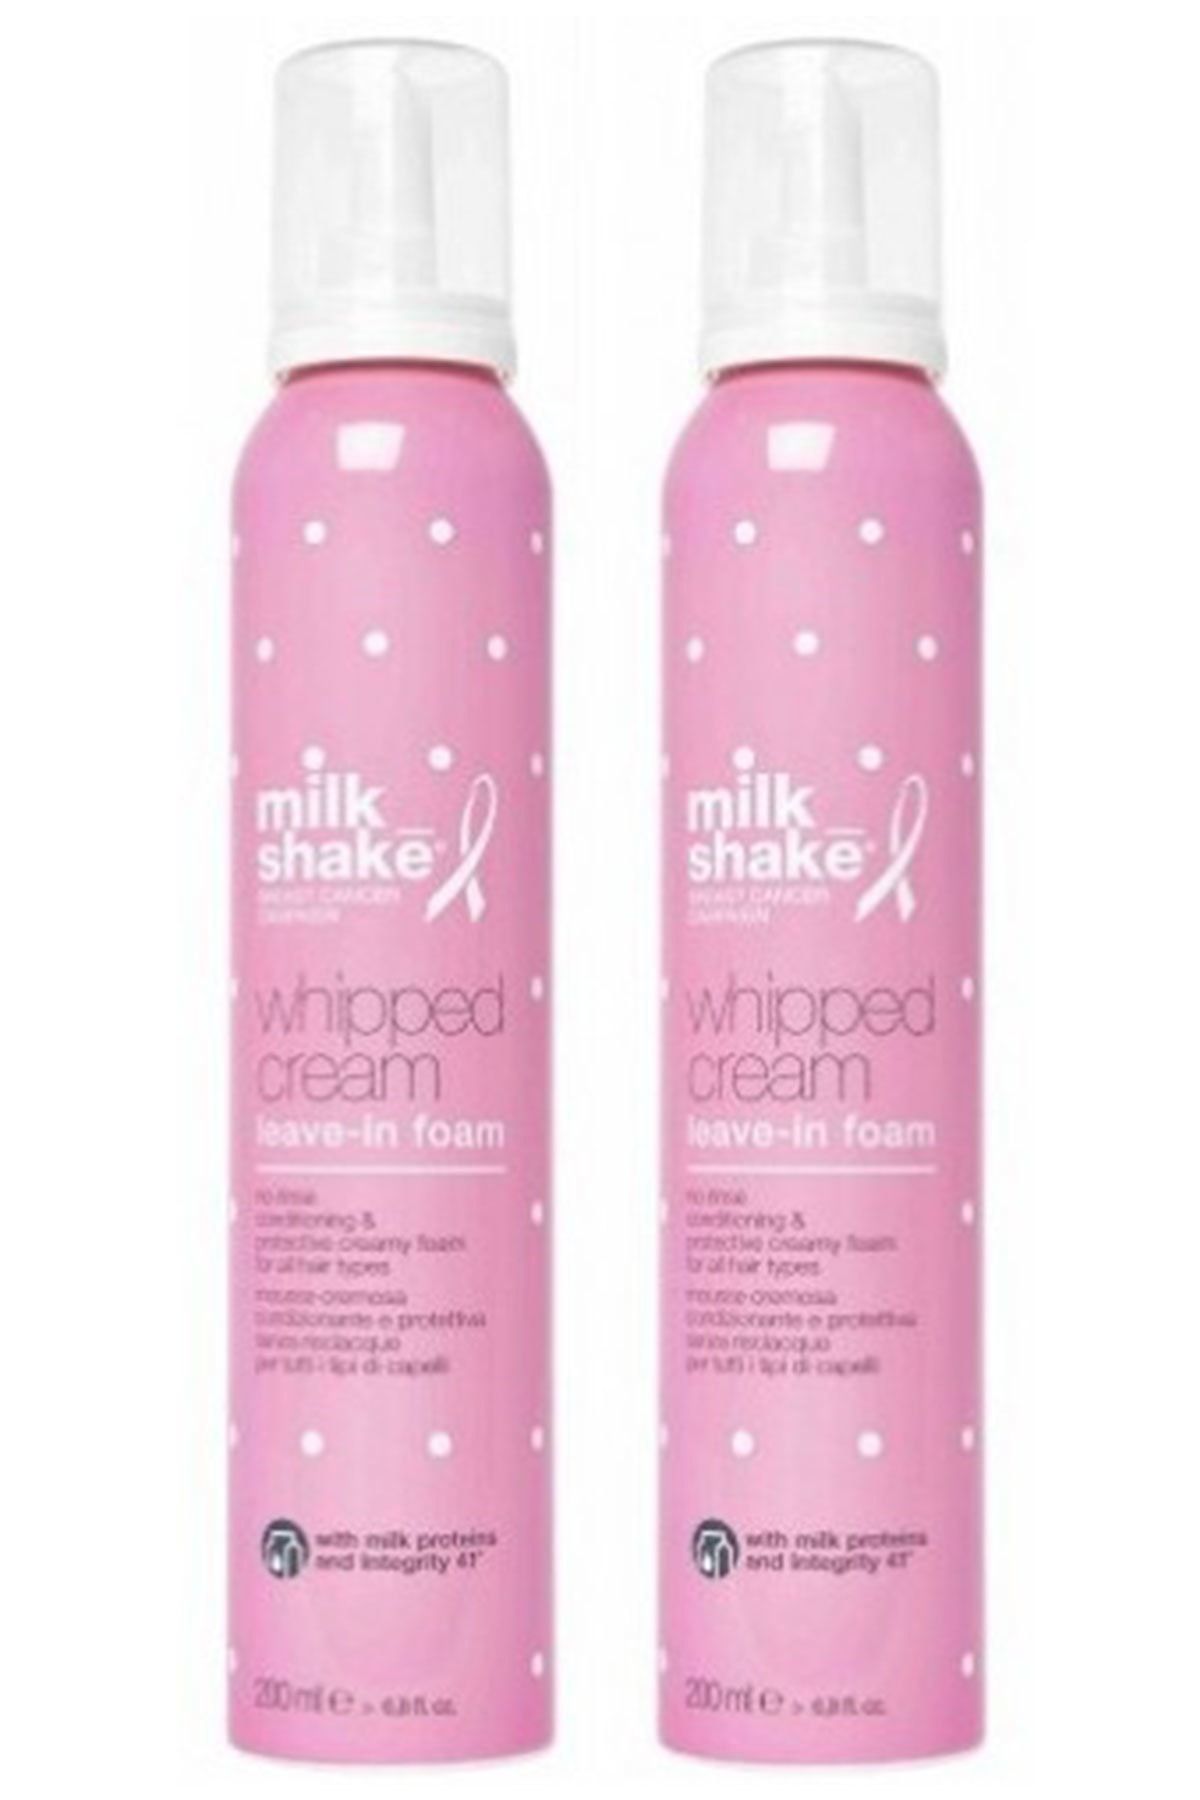 Milkshake Milk Shake Whipped Cream Durulanmayan Koruyucu Bakım Köpüğü 200m